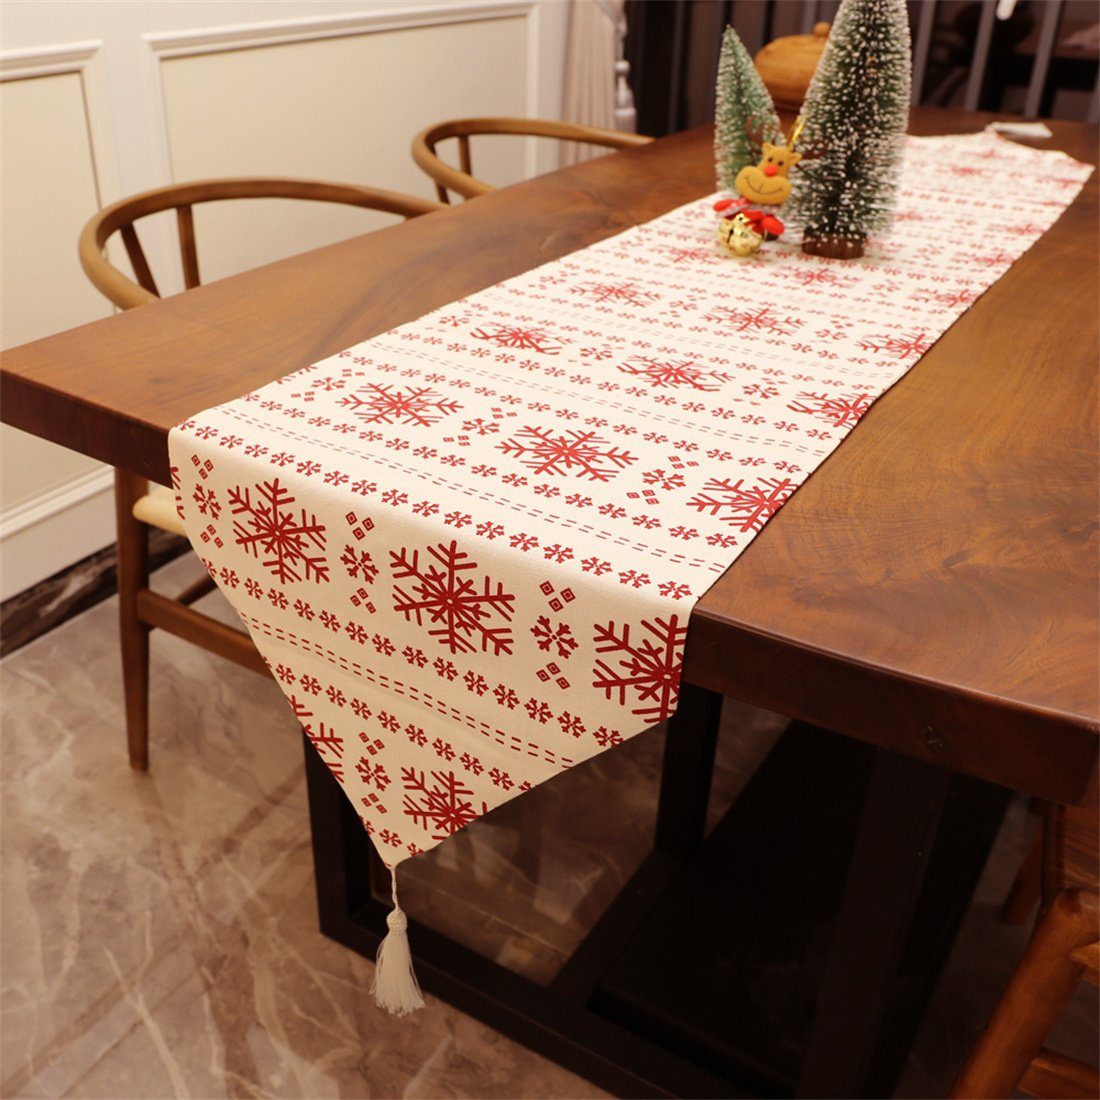 Tischläufer Tischläufer Leinwand DÖRÖY Schneeflocke Weihnachten druckenTabelle,festliche